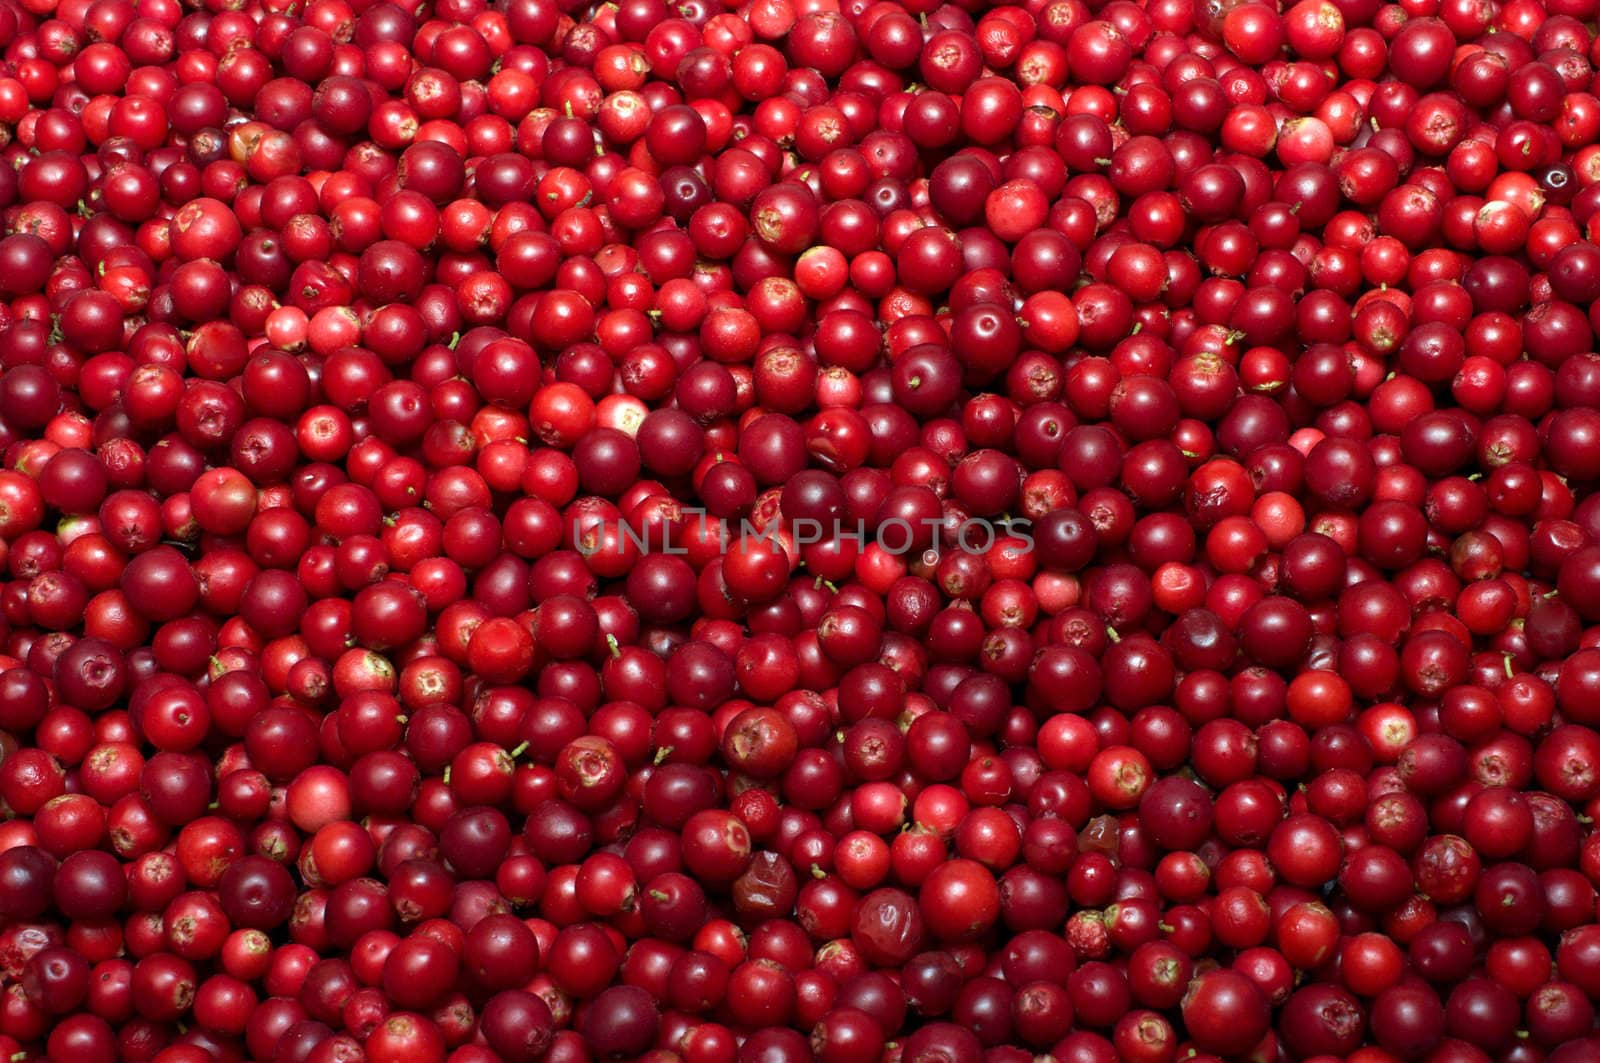 Red bilberries. by kromeshnik